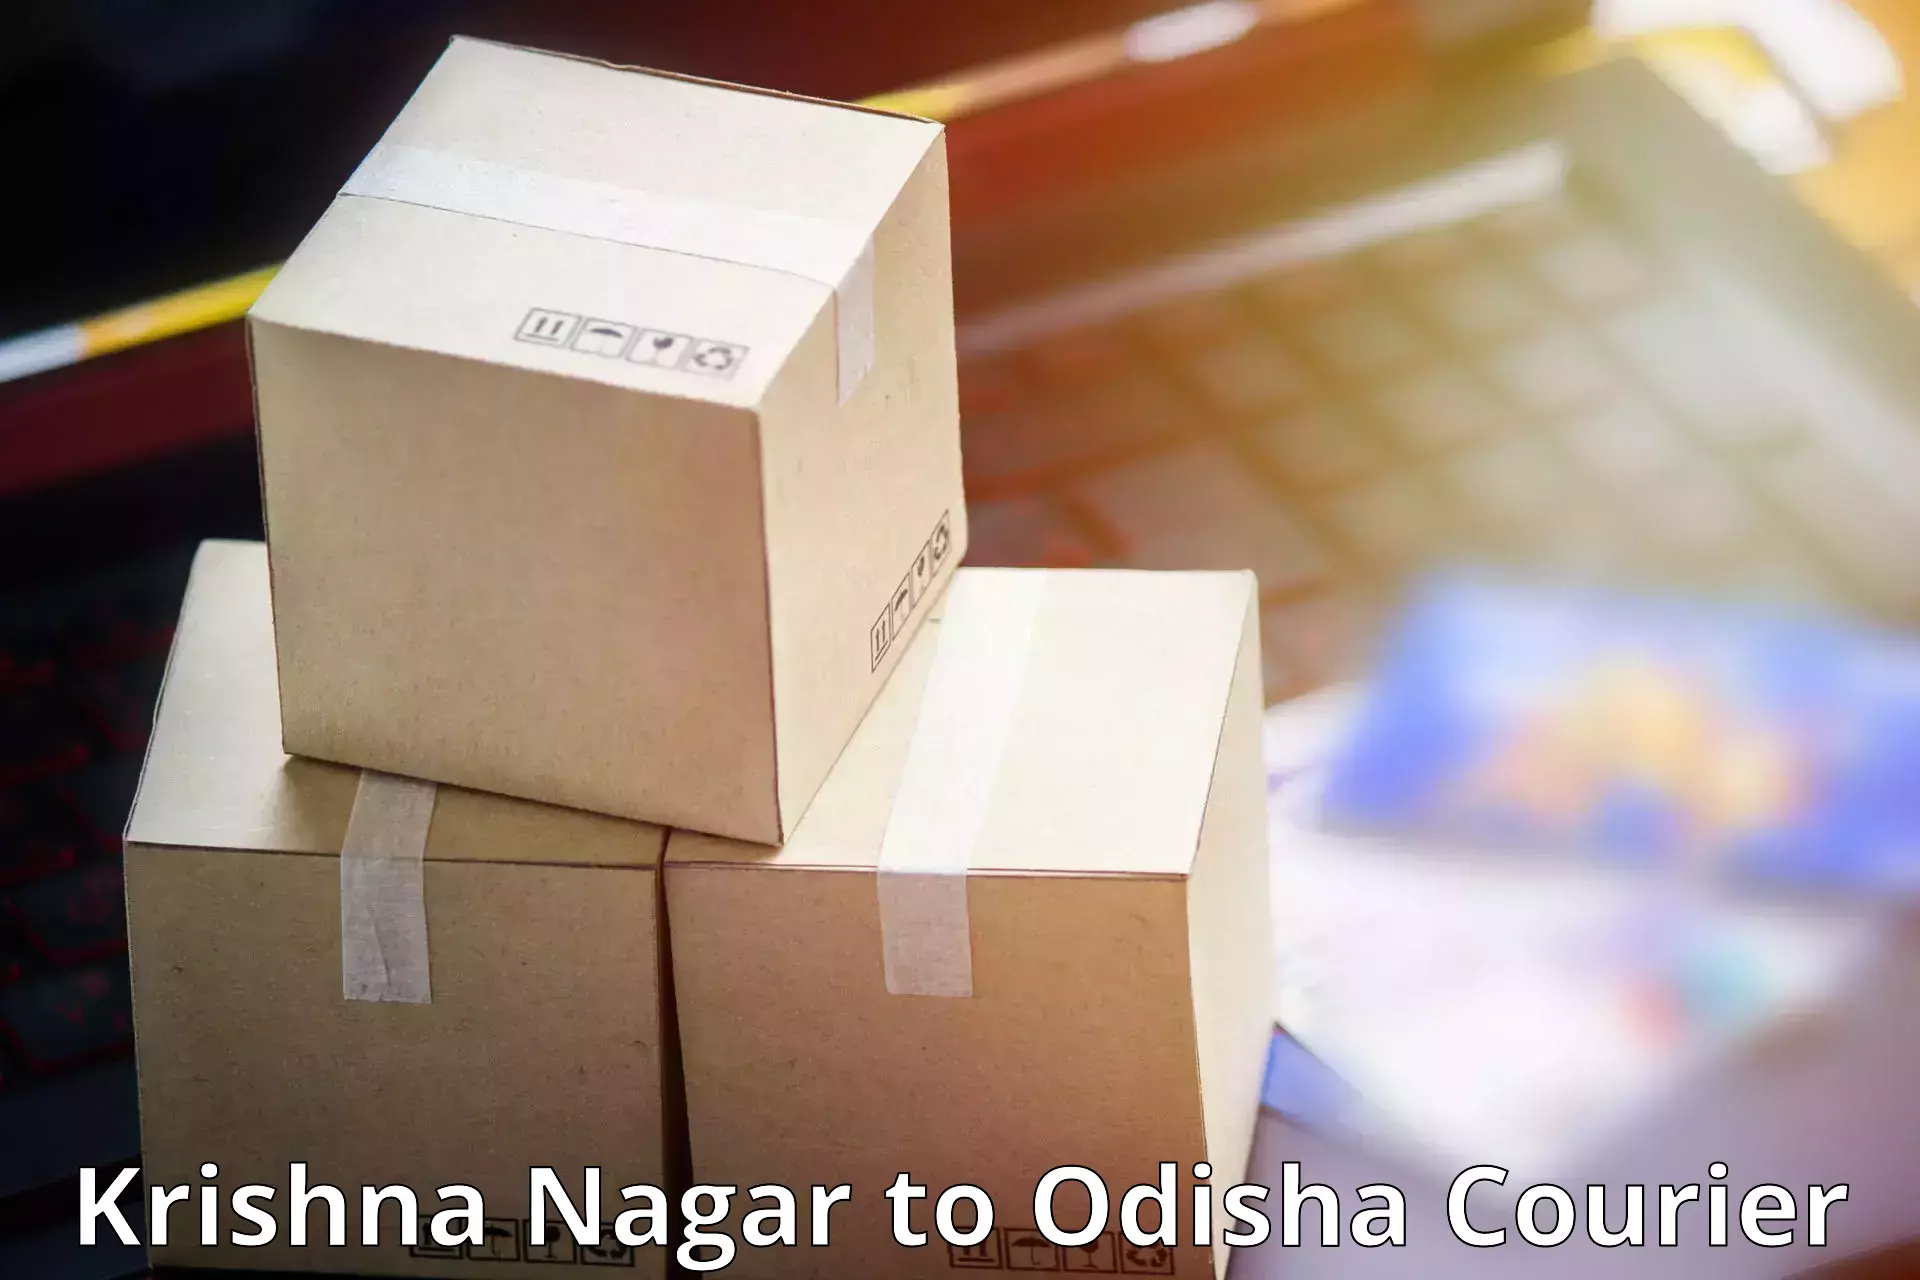 Express courier facilities Krishna Nagar to Bamra